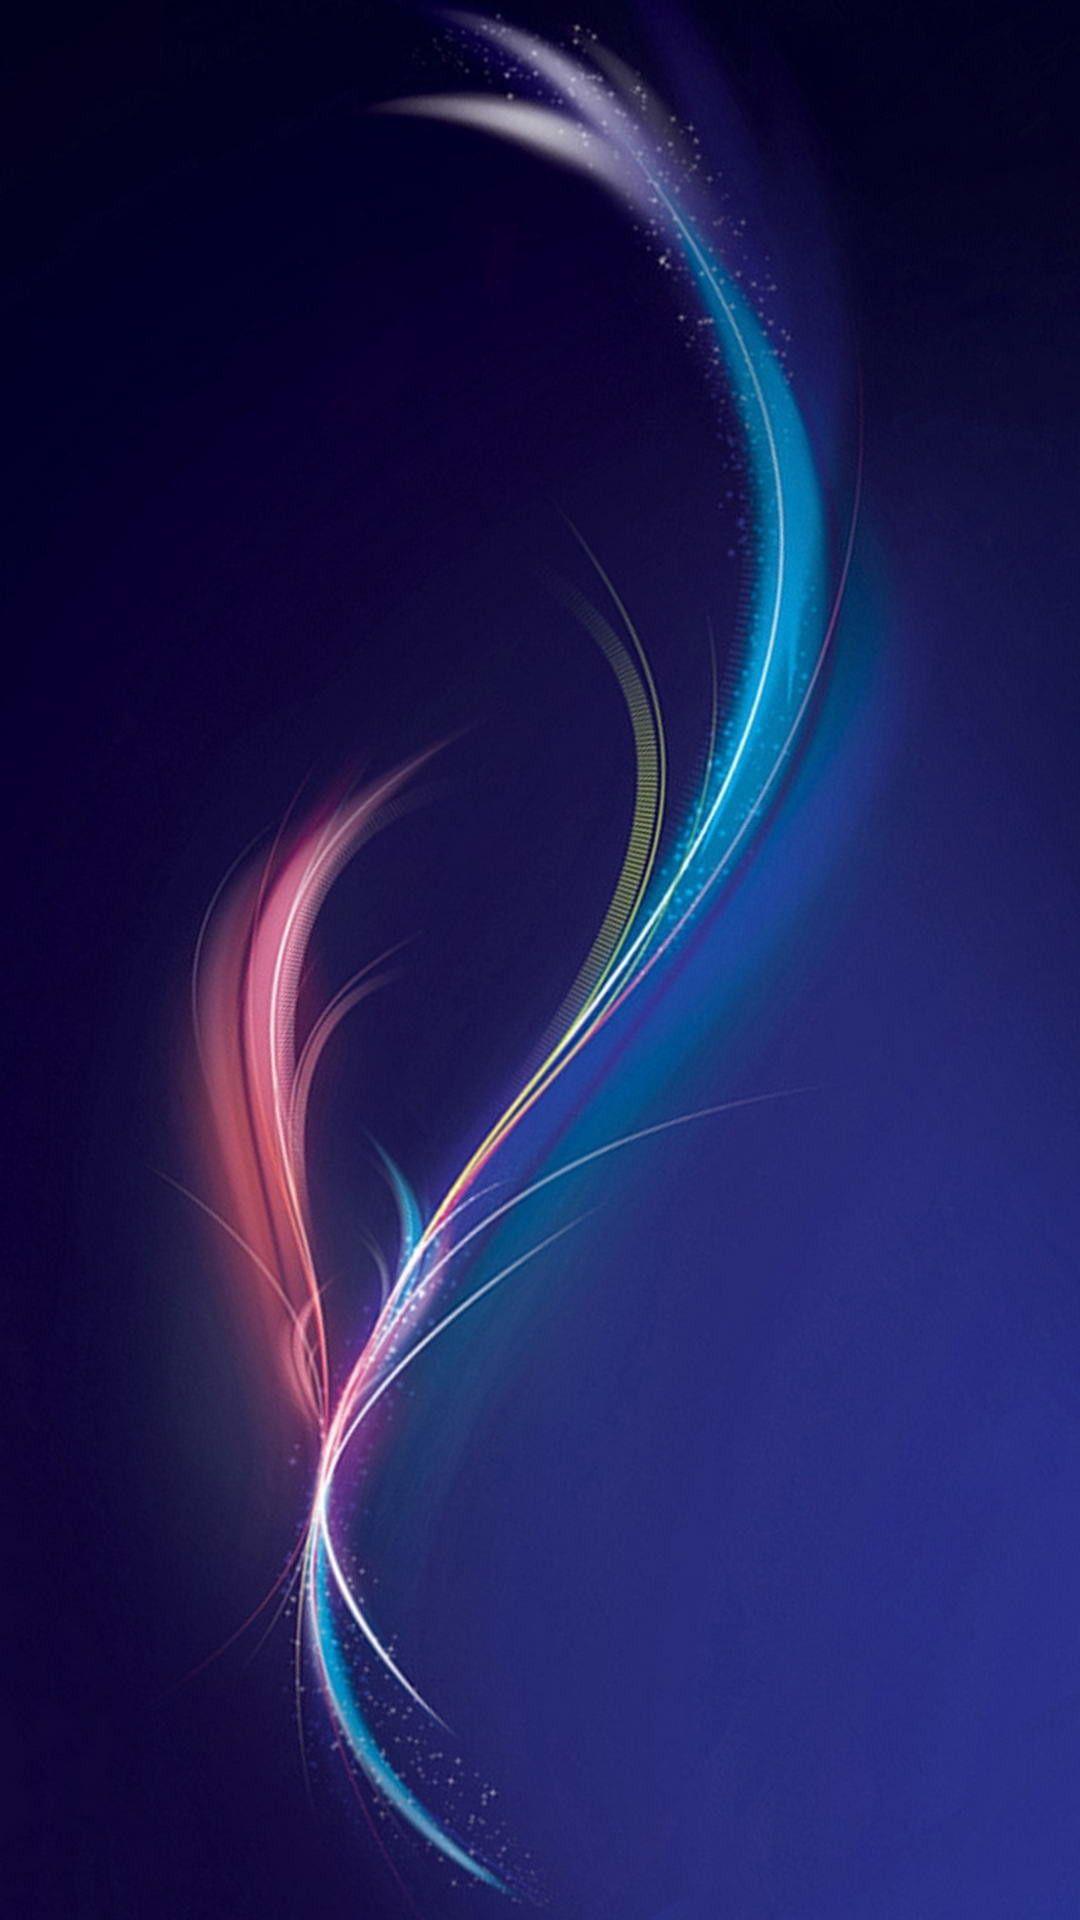 Nexus 5 Wallpapers Top Free Nexus 5 Backgrounds Wallpaperaccess